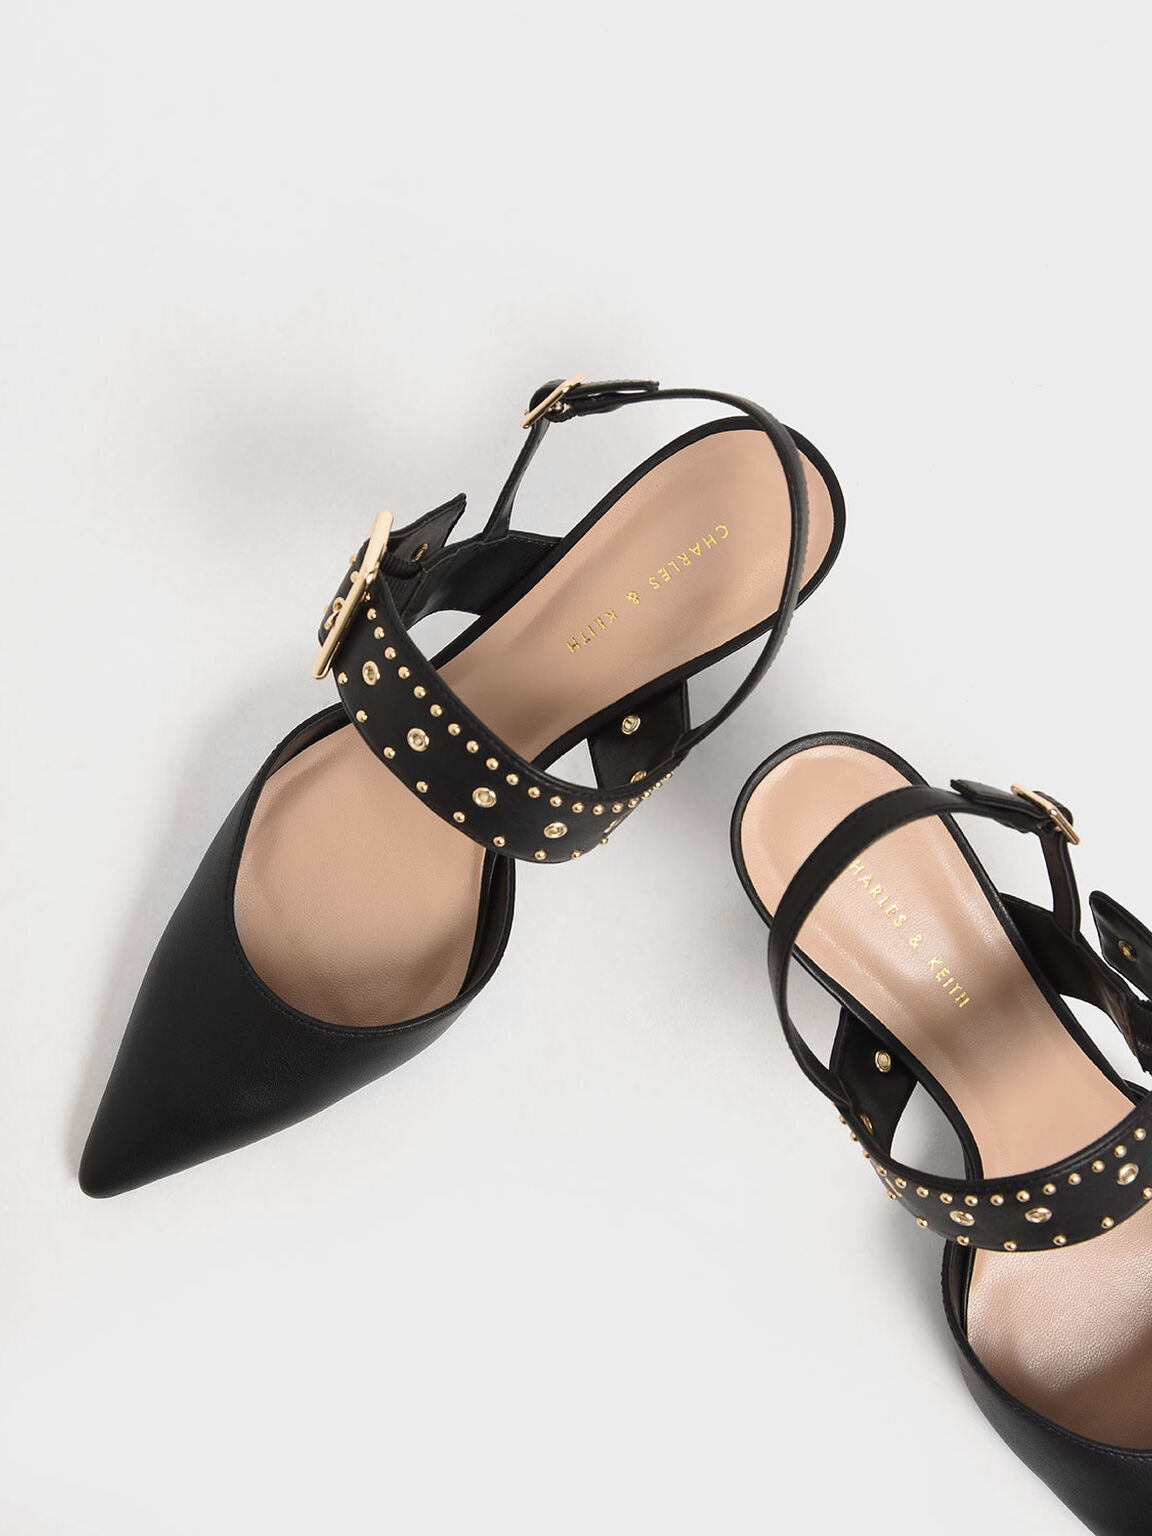 Sepatu Studded Slingback Heels, Black, hi-res